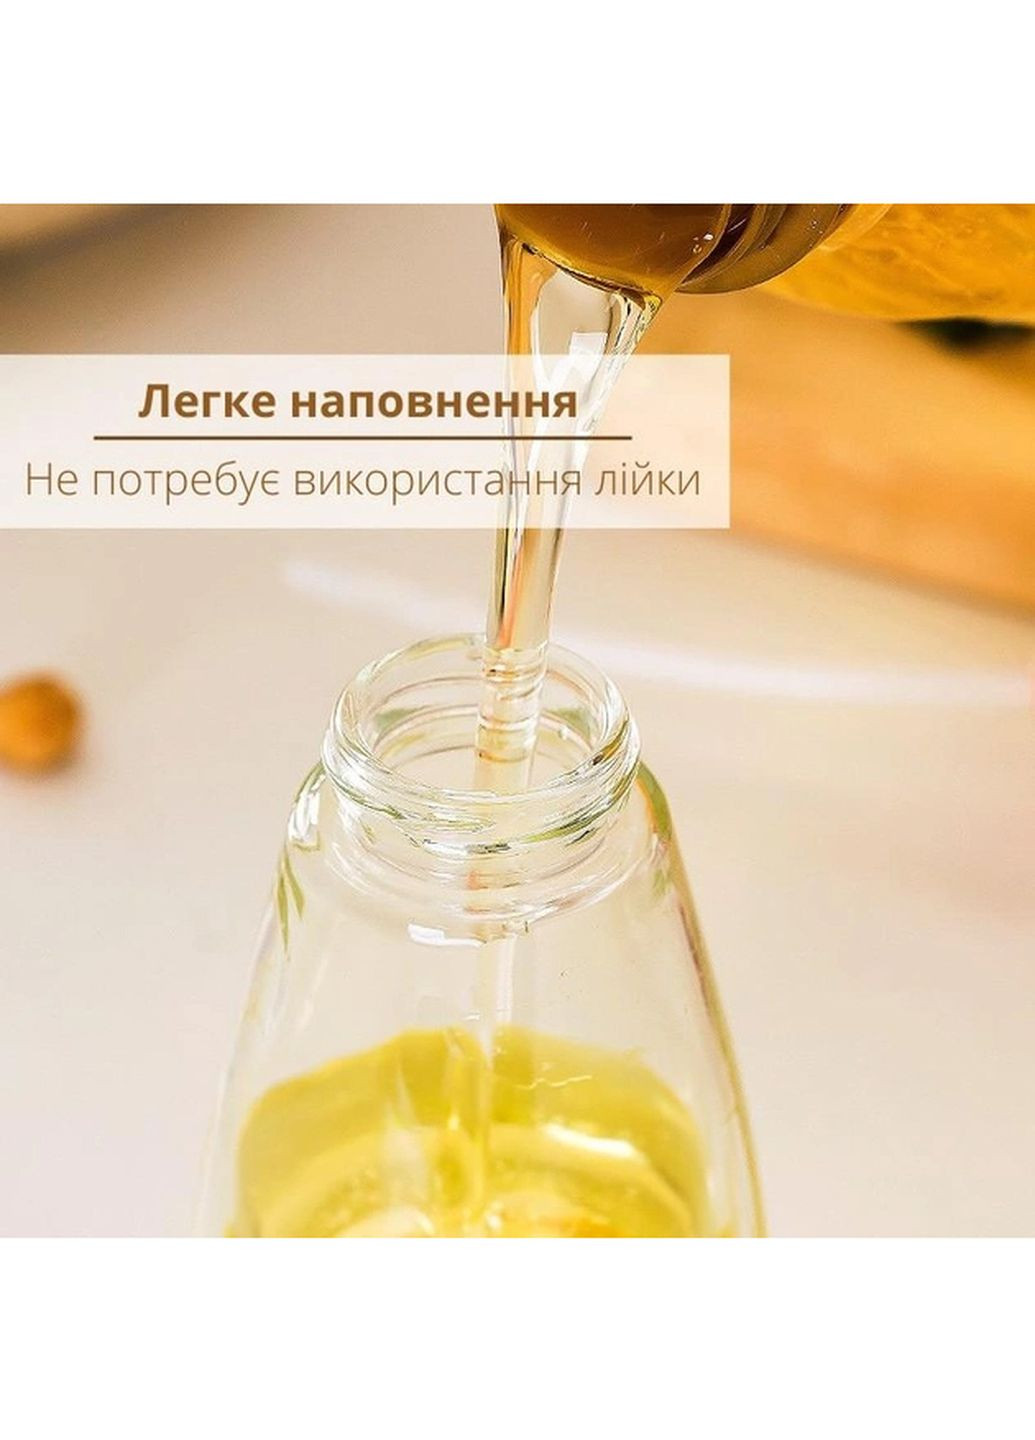 Распылитель диспенсер бутылка спрей для масла, уксуса, соусов, 180 мл стеклянный Kitchen Master (270363752)